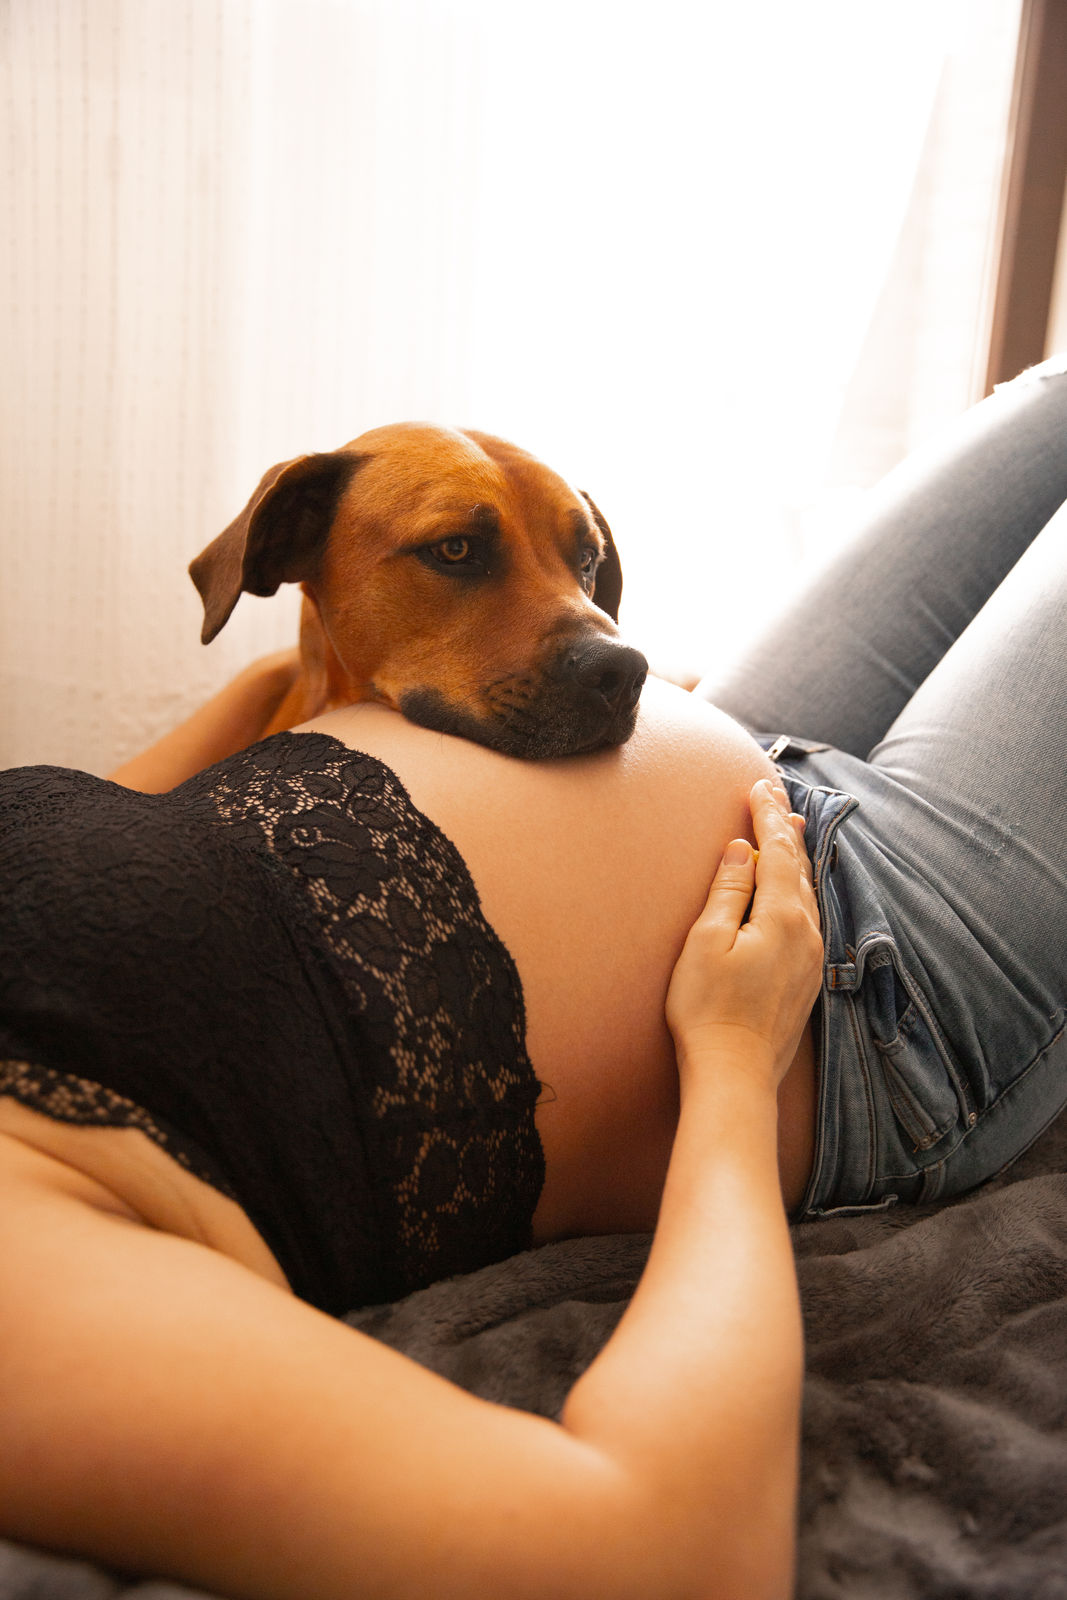 Eine schwangere Frauliegt mit offenem Hemd in einem hellen Raum. Sie ist glücklich und lächelt. Ein brauner Hund liegt auf dem nackten Bauch.